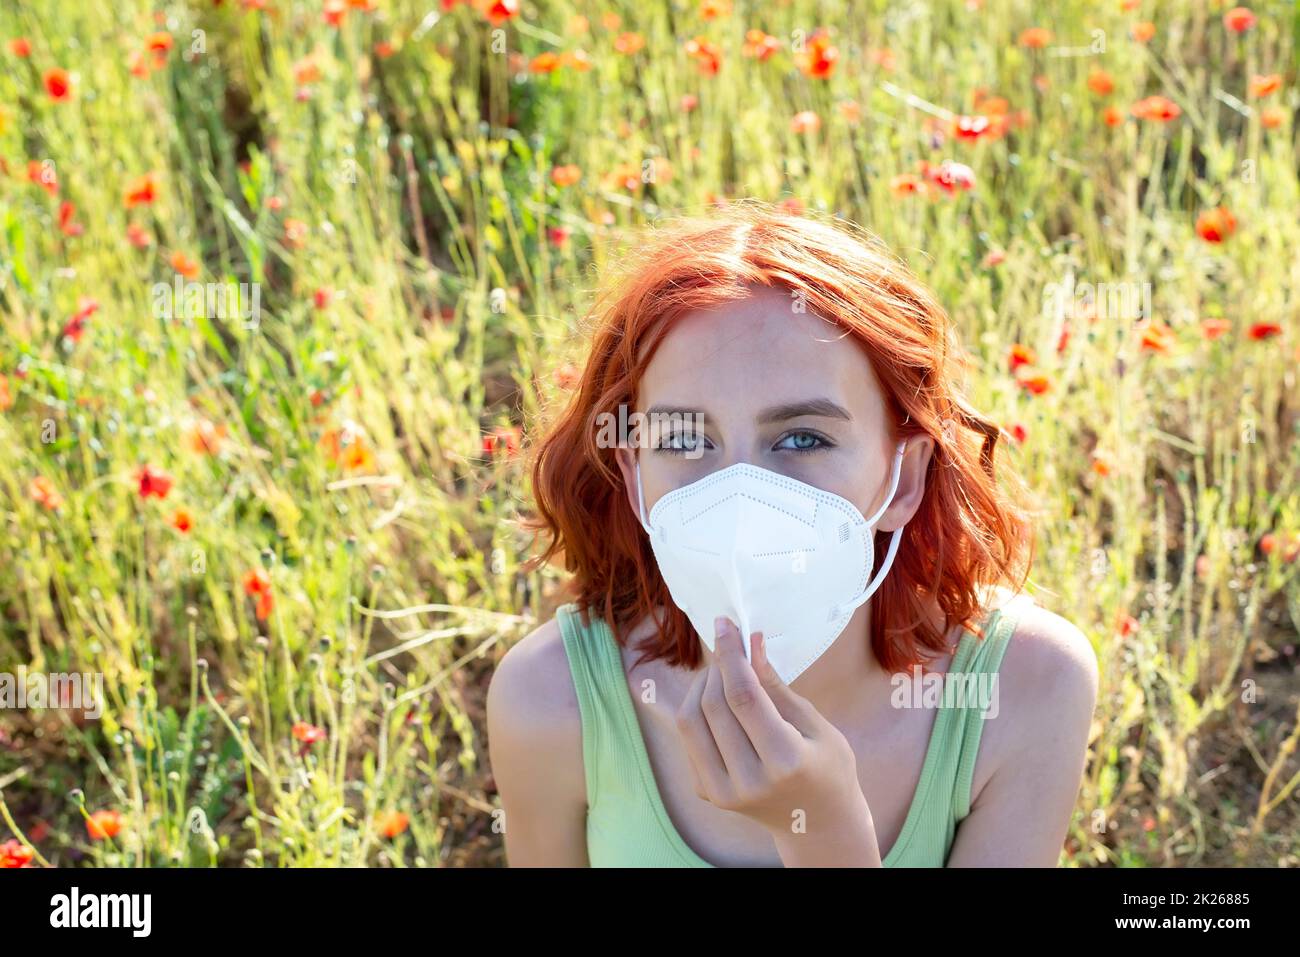 niña frustrada con máscara protectora en el campo de amapola Foto de stock